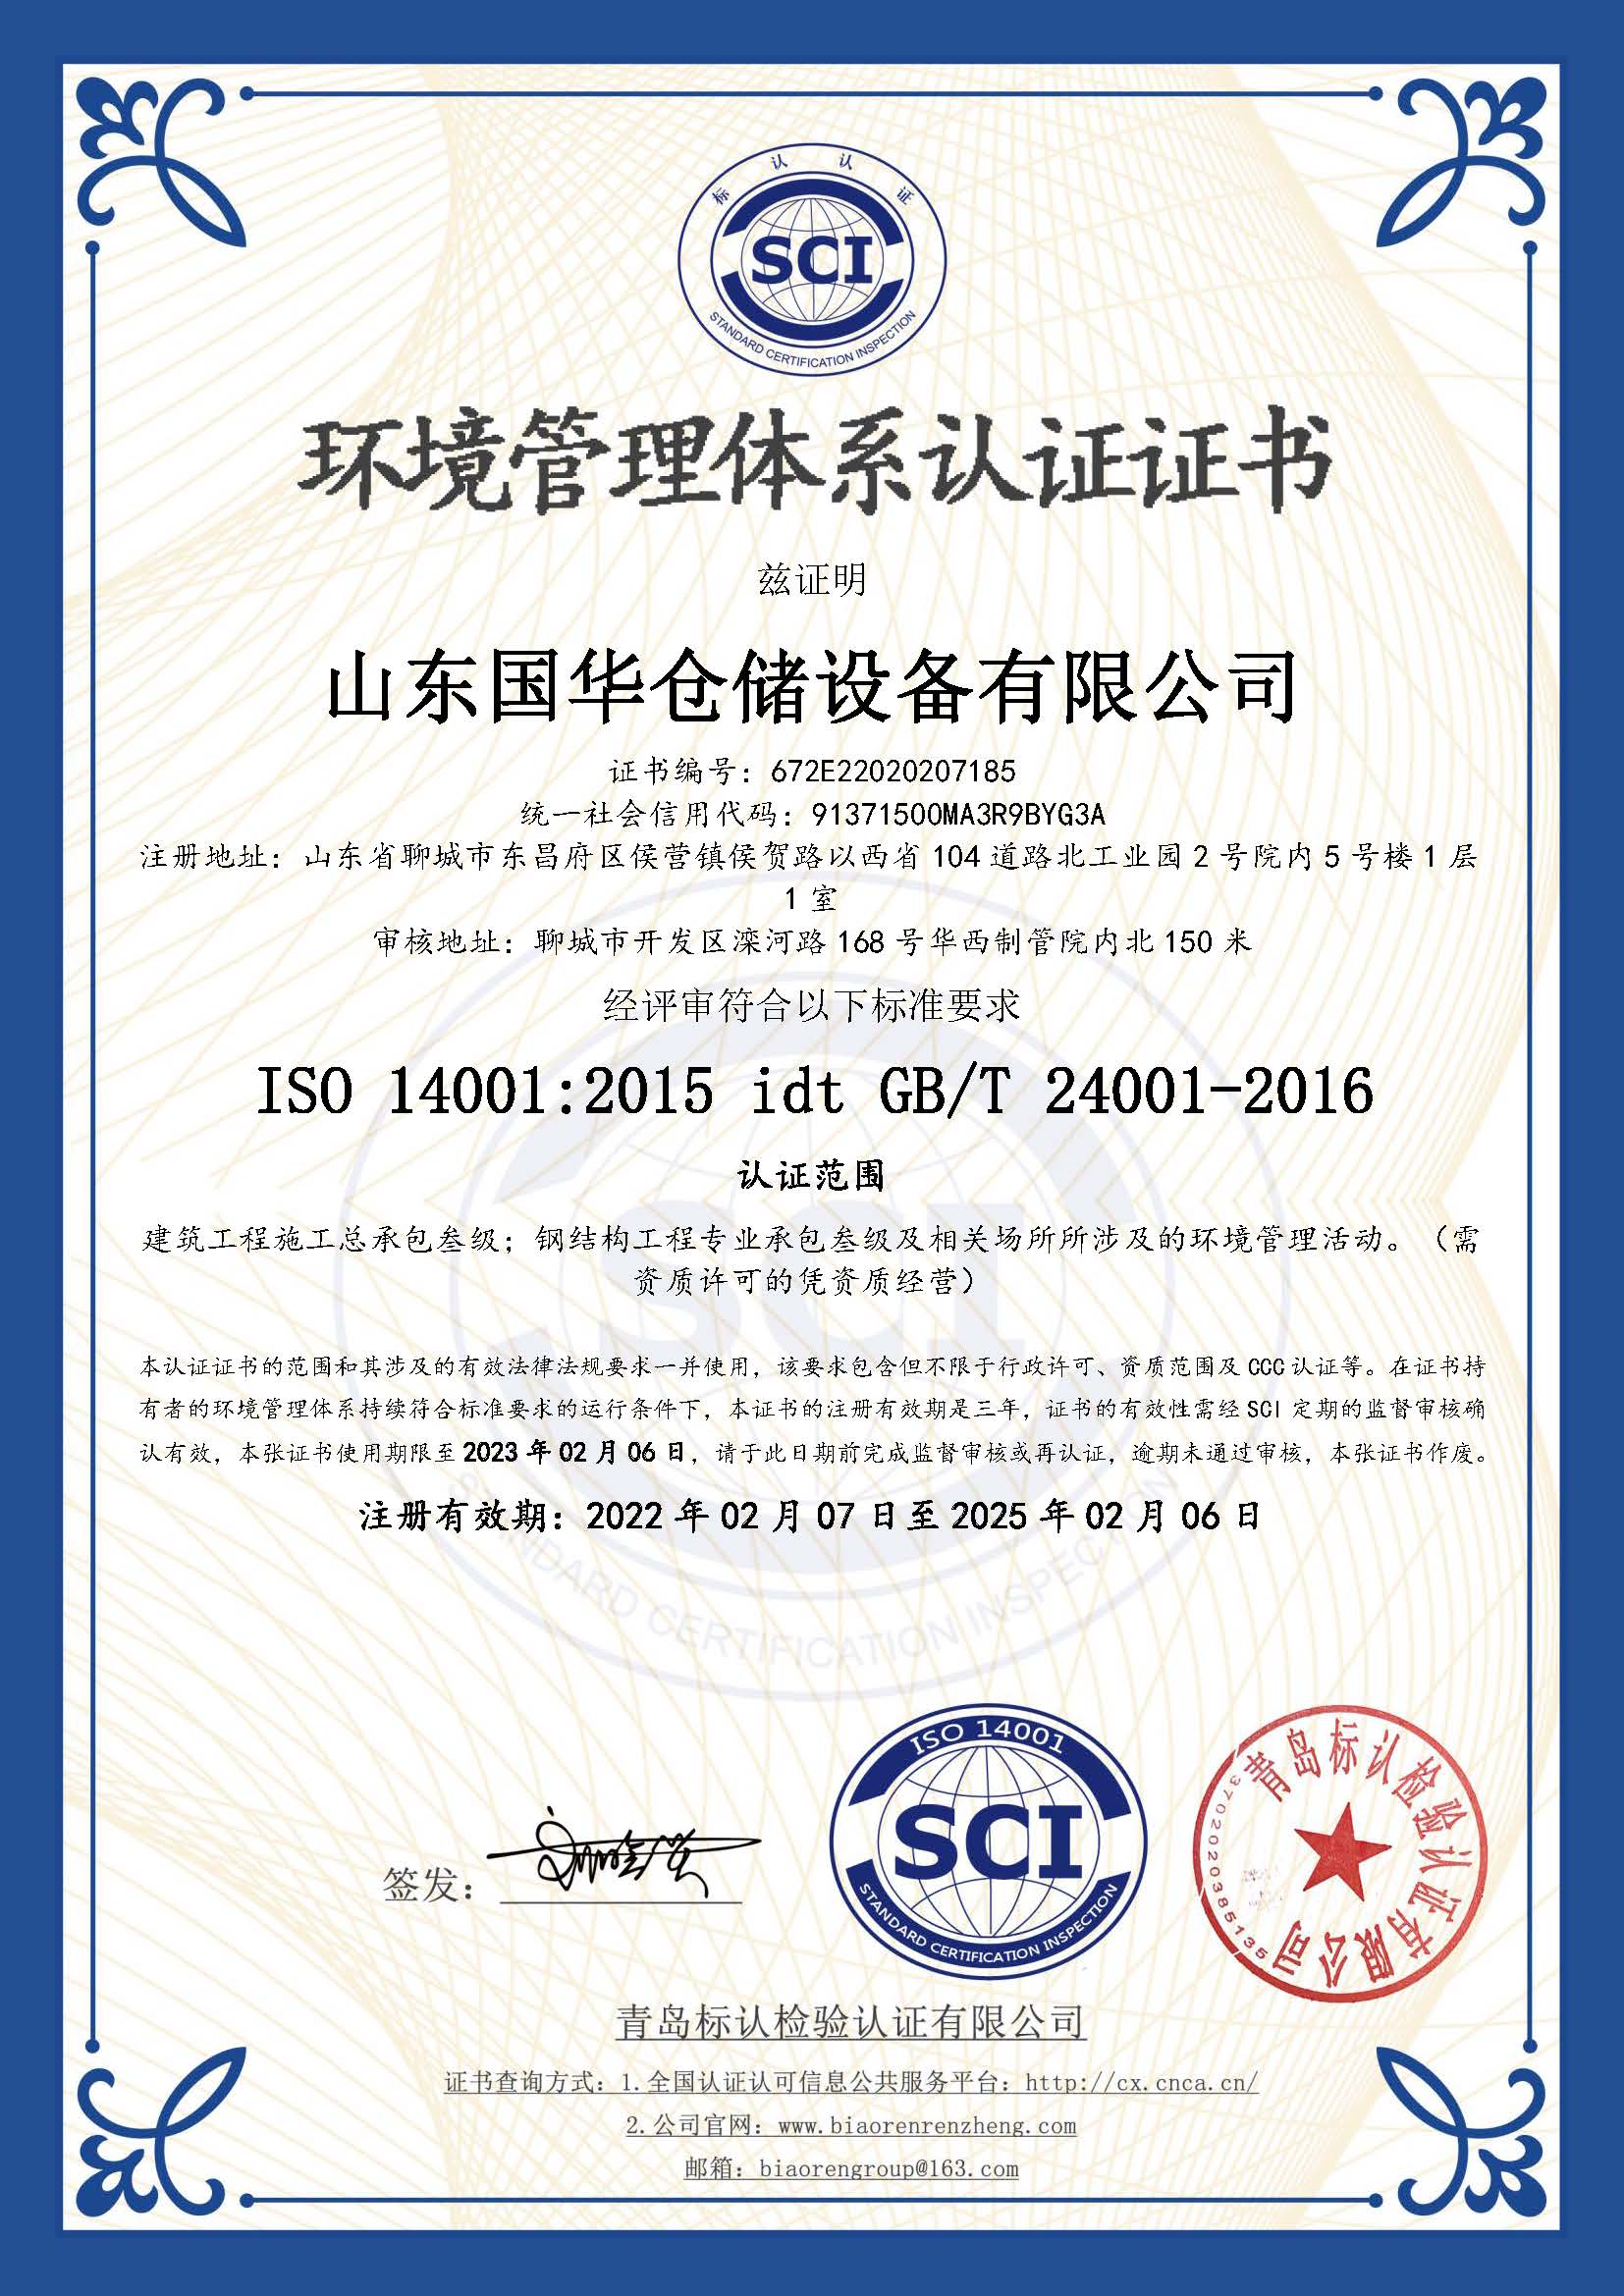 钢板仓环境管理体系认证证书